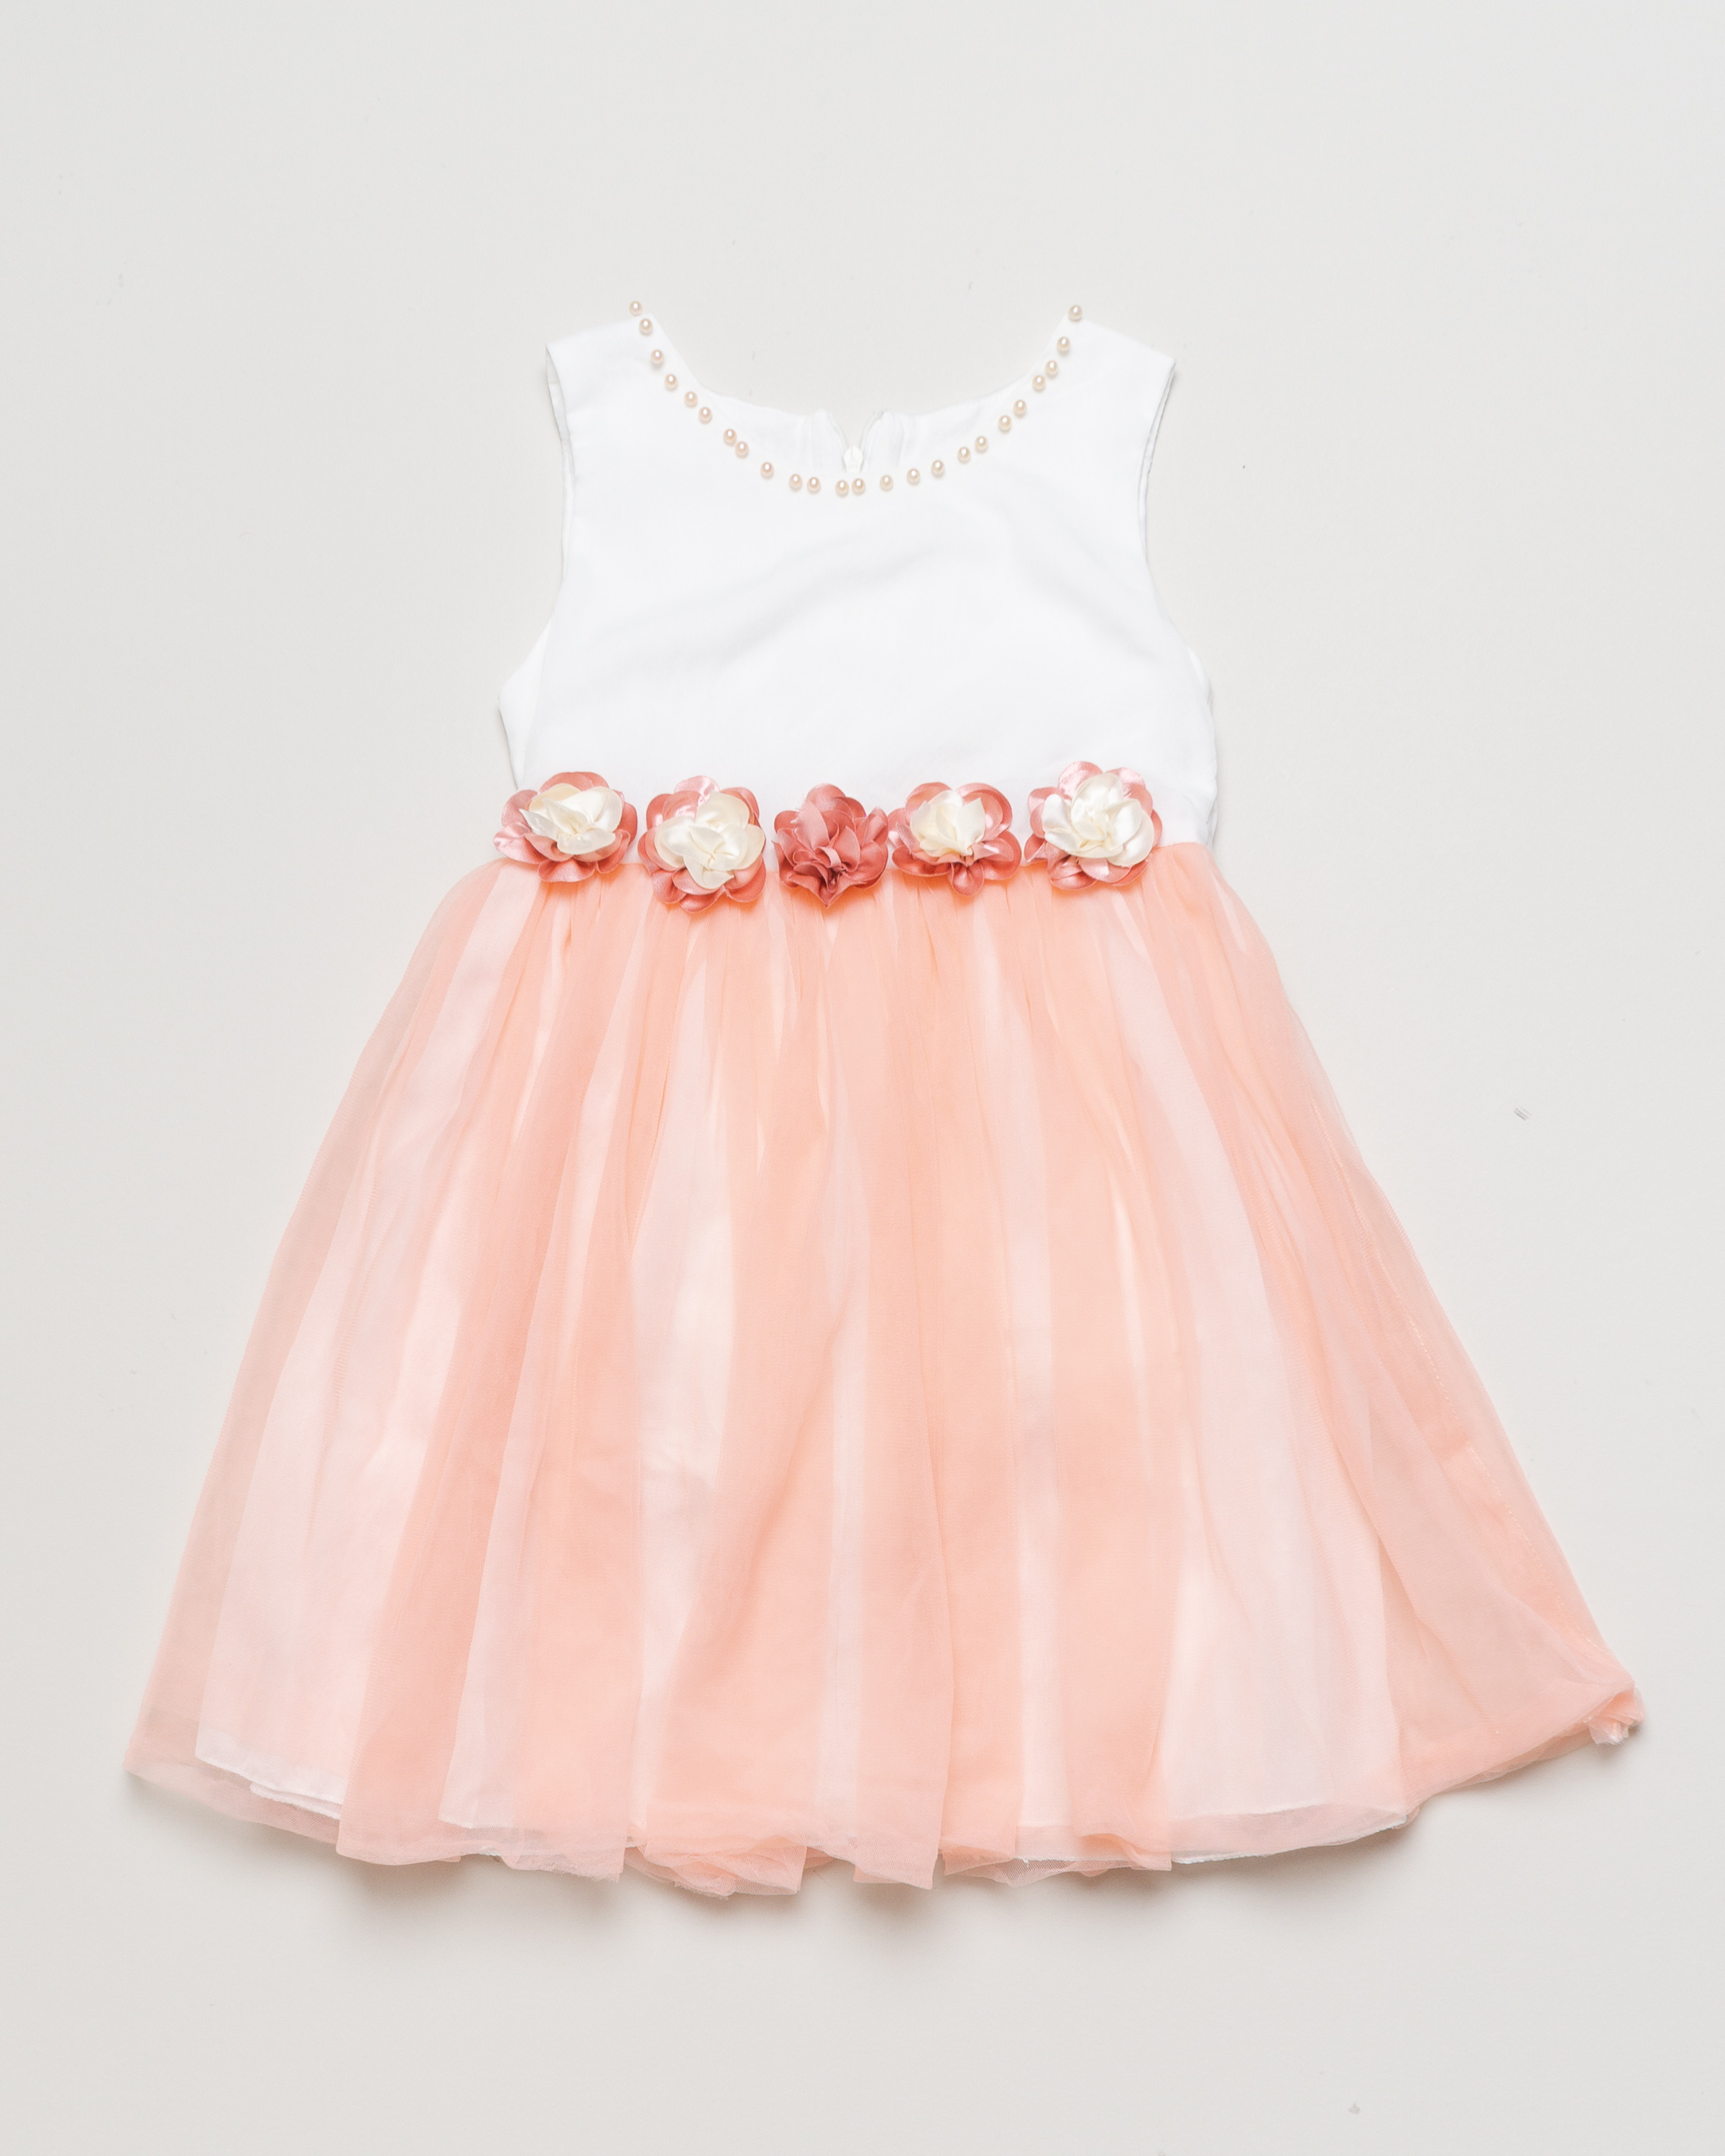 1 Kleid Gr. 116-122 – weiß rosa pfirsich Blumen Perlen Tüll Festlich 